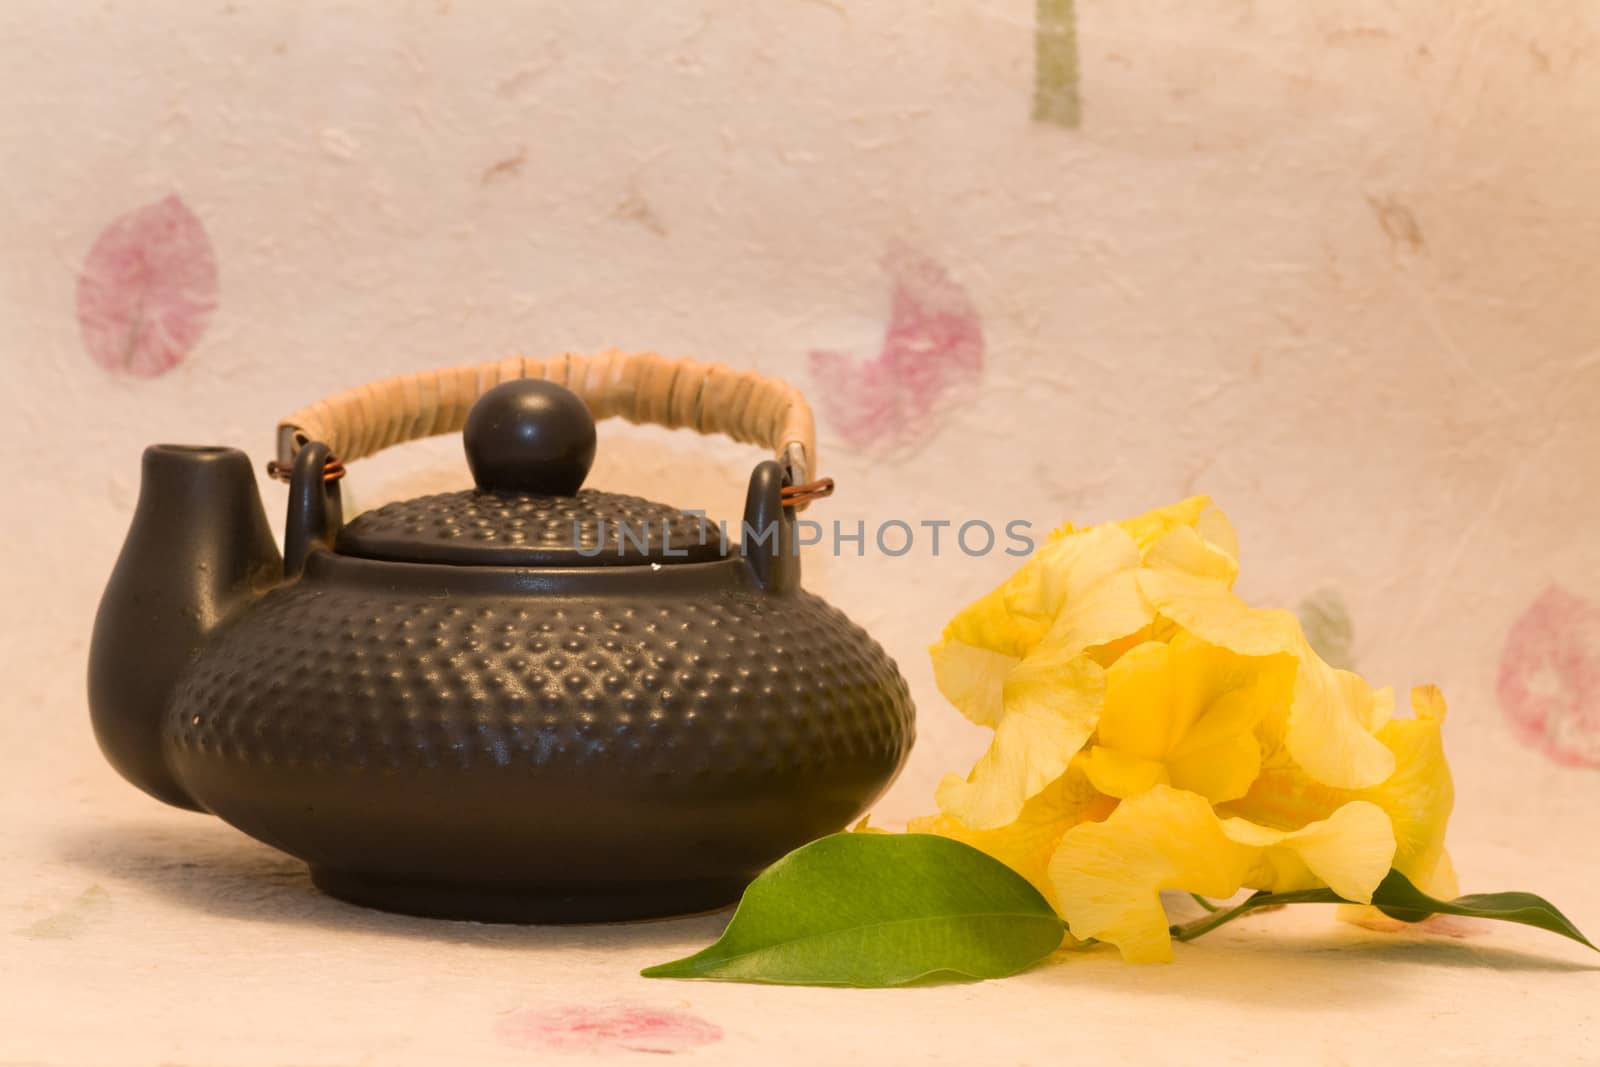 asian style - Yellow iris and black teapot 